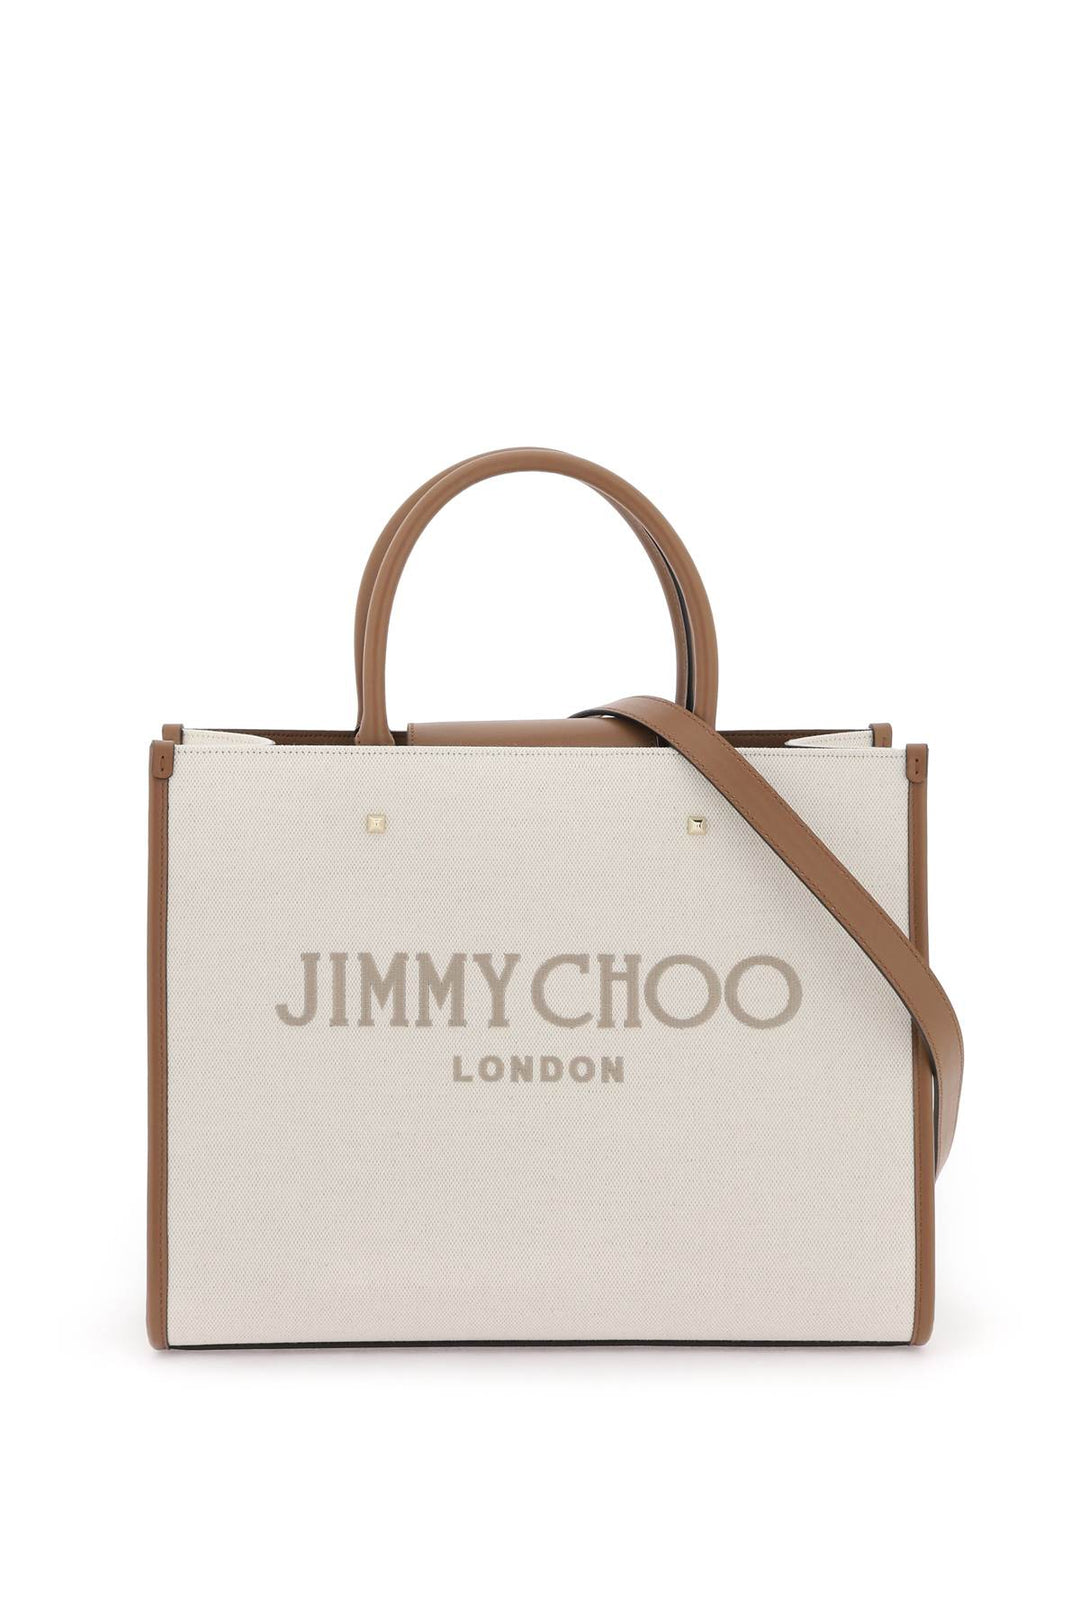 Jimmy Choo Avenue M Tote Bag   Beige